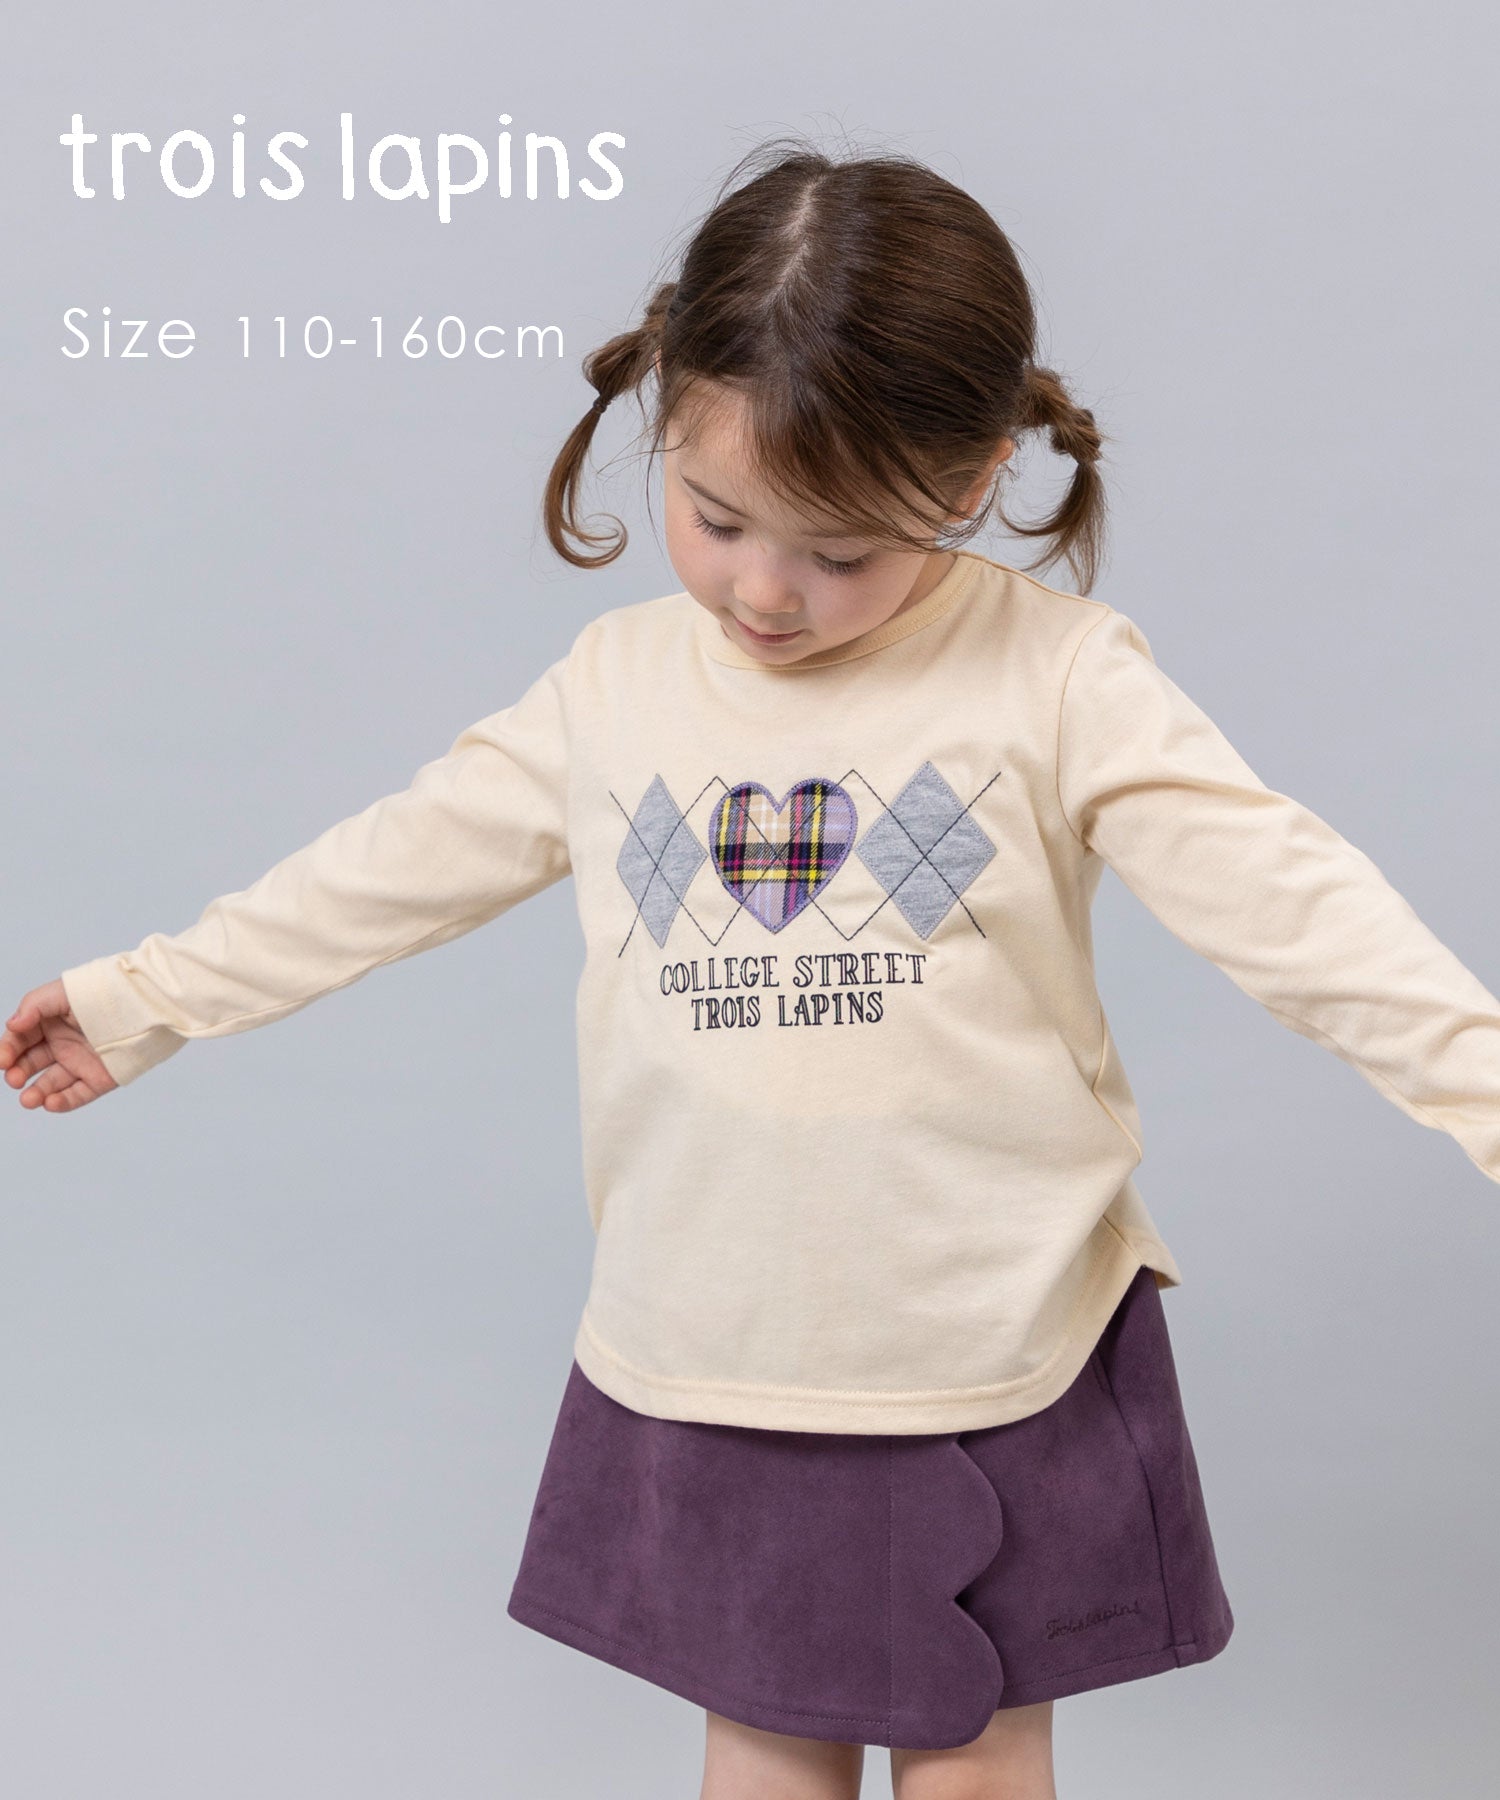 troislapins(トロワラパン)アーガイルデザイン長袖Tシャツ(110~160cm